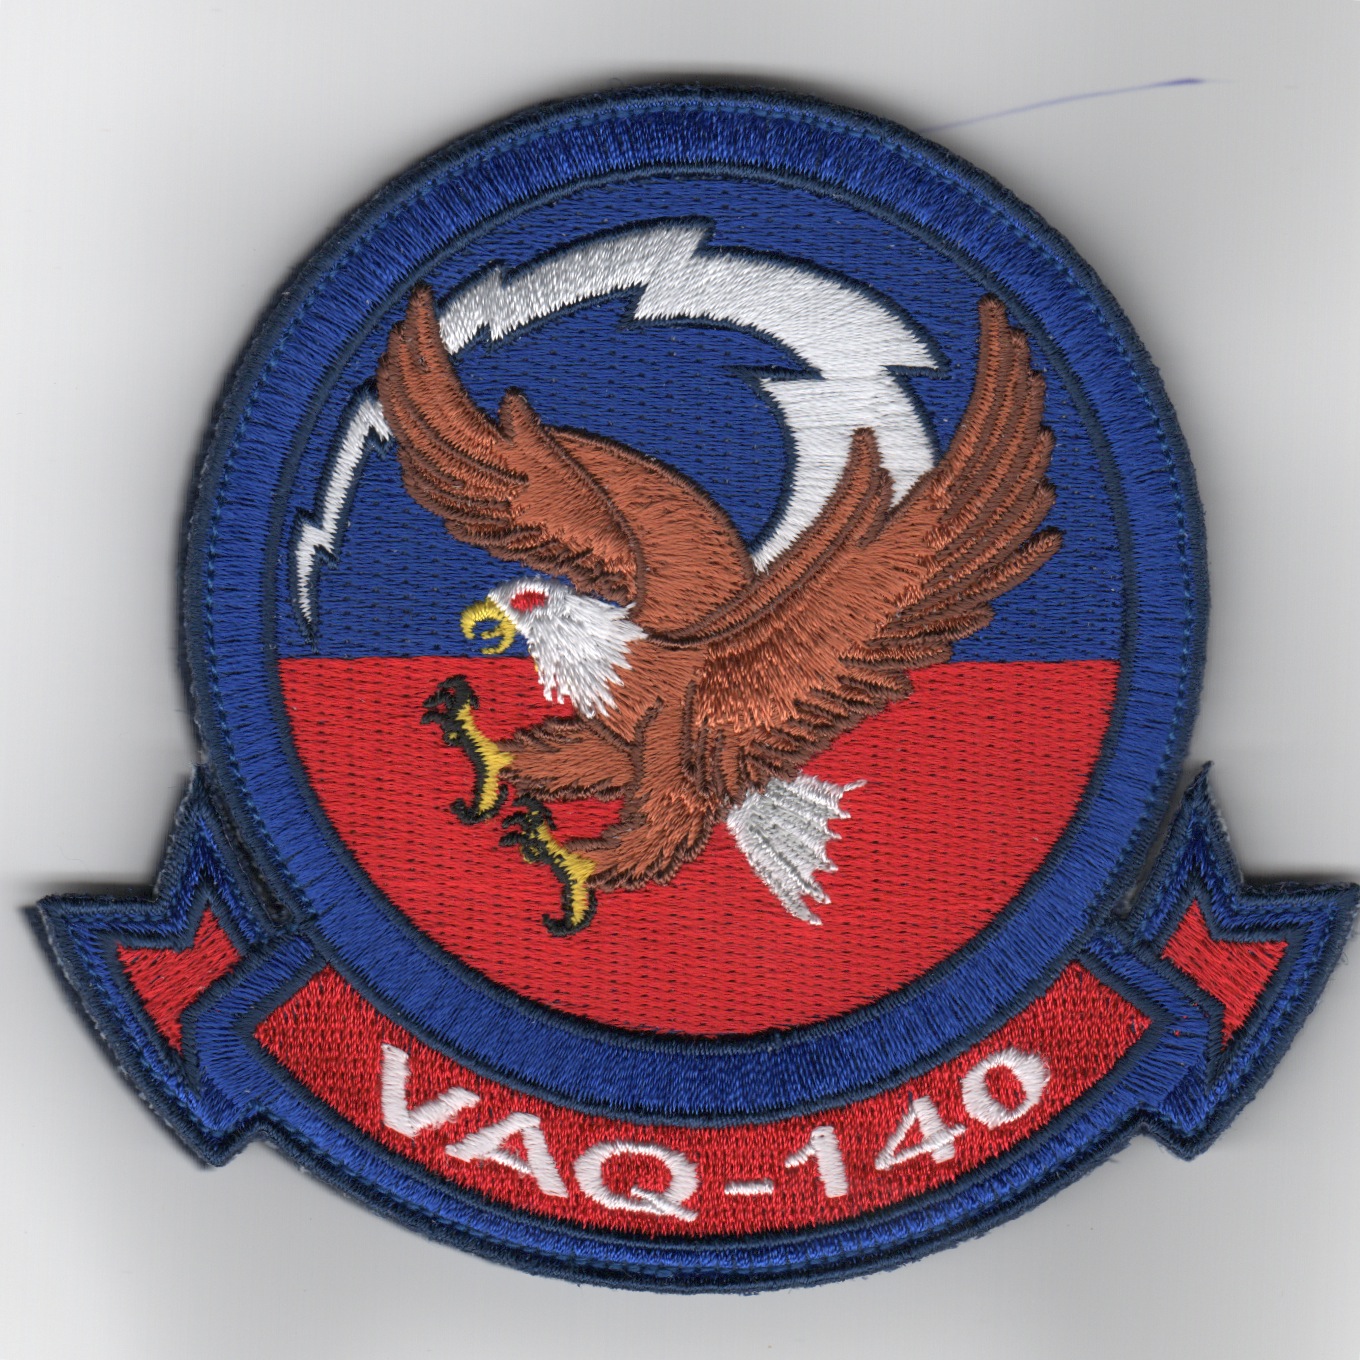 VAQ-140 Squadron Patch (Blue/V)